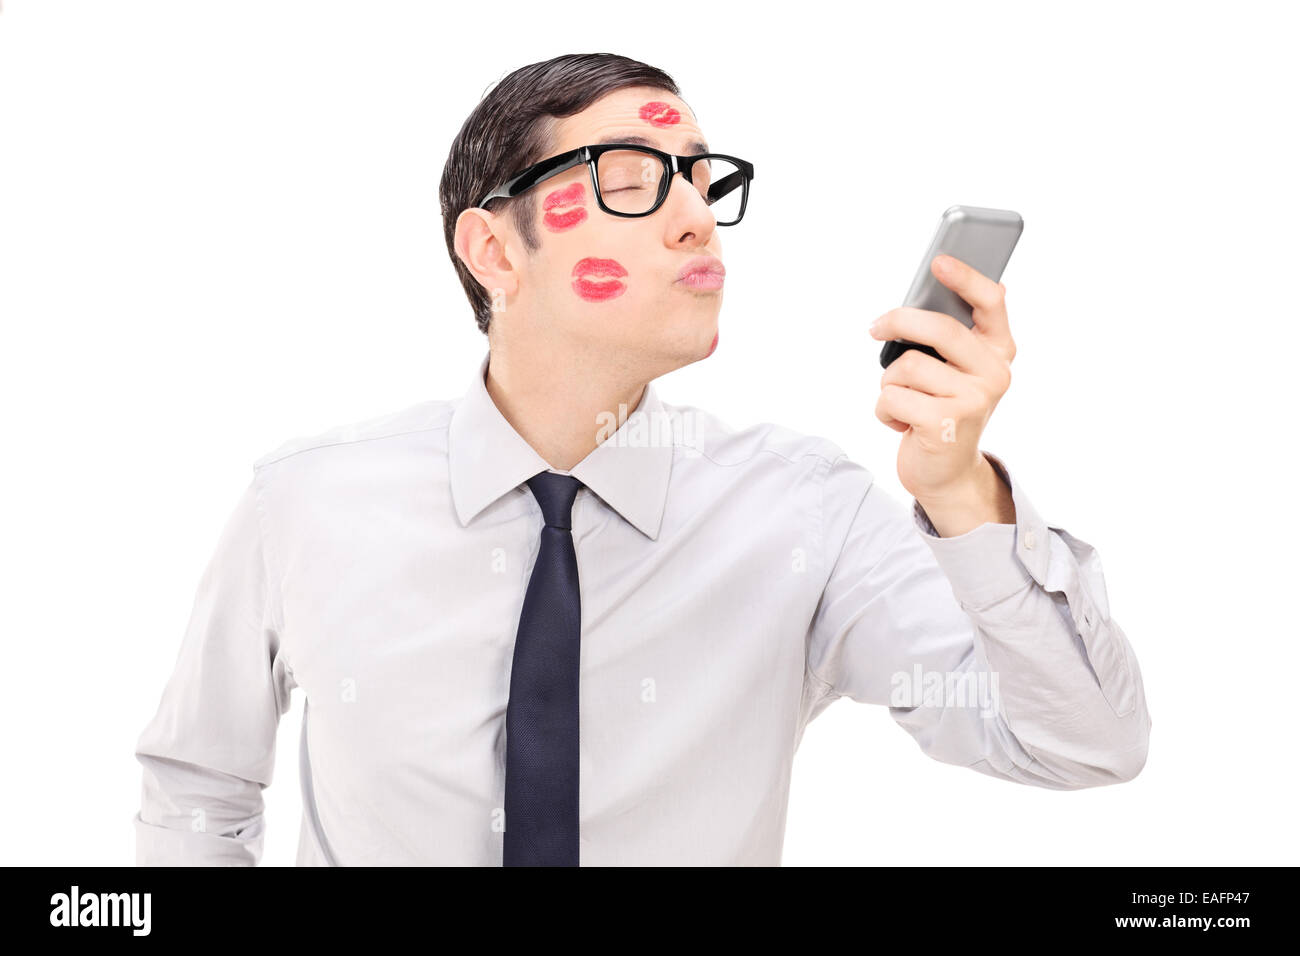 Hombre enviando un beso a través de un teléfono celular aislado sobre fondo blanco. Foto de stock